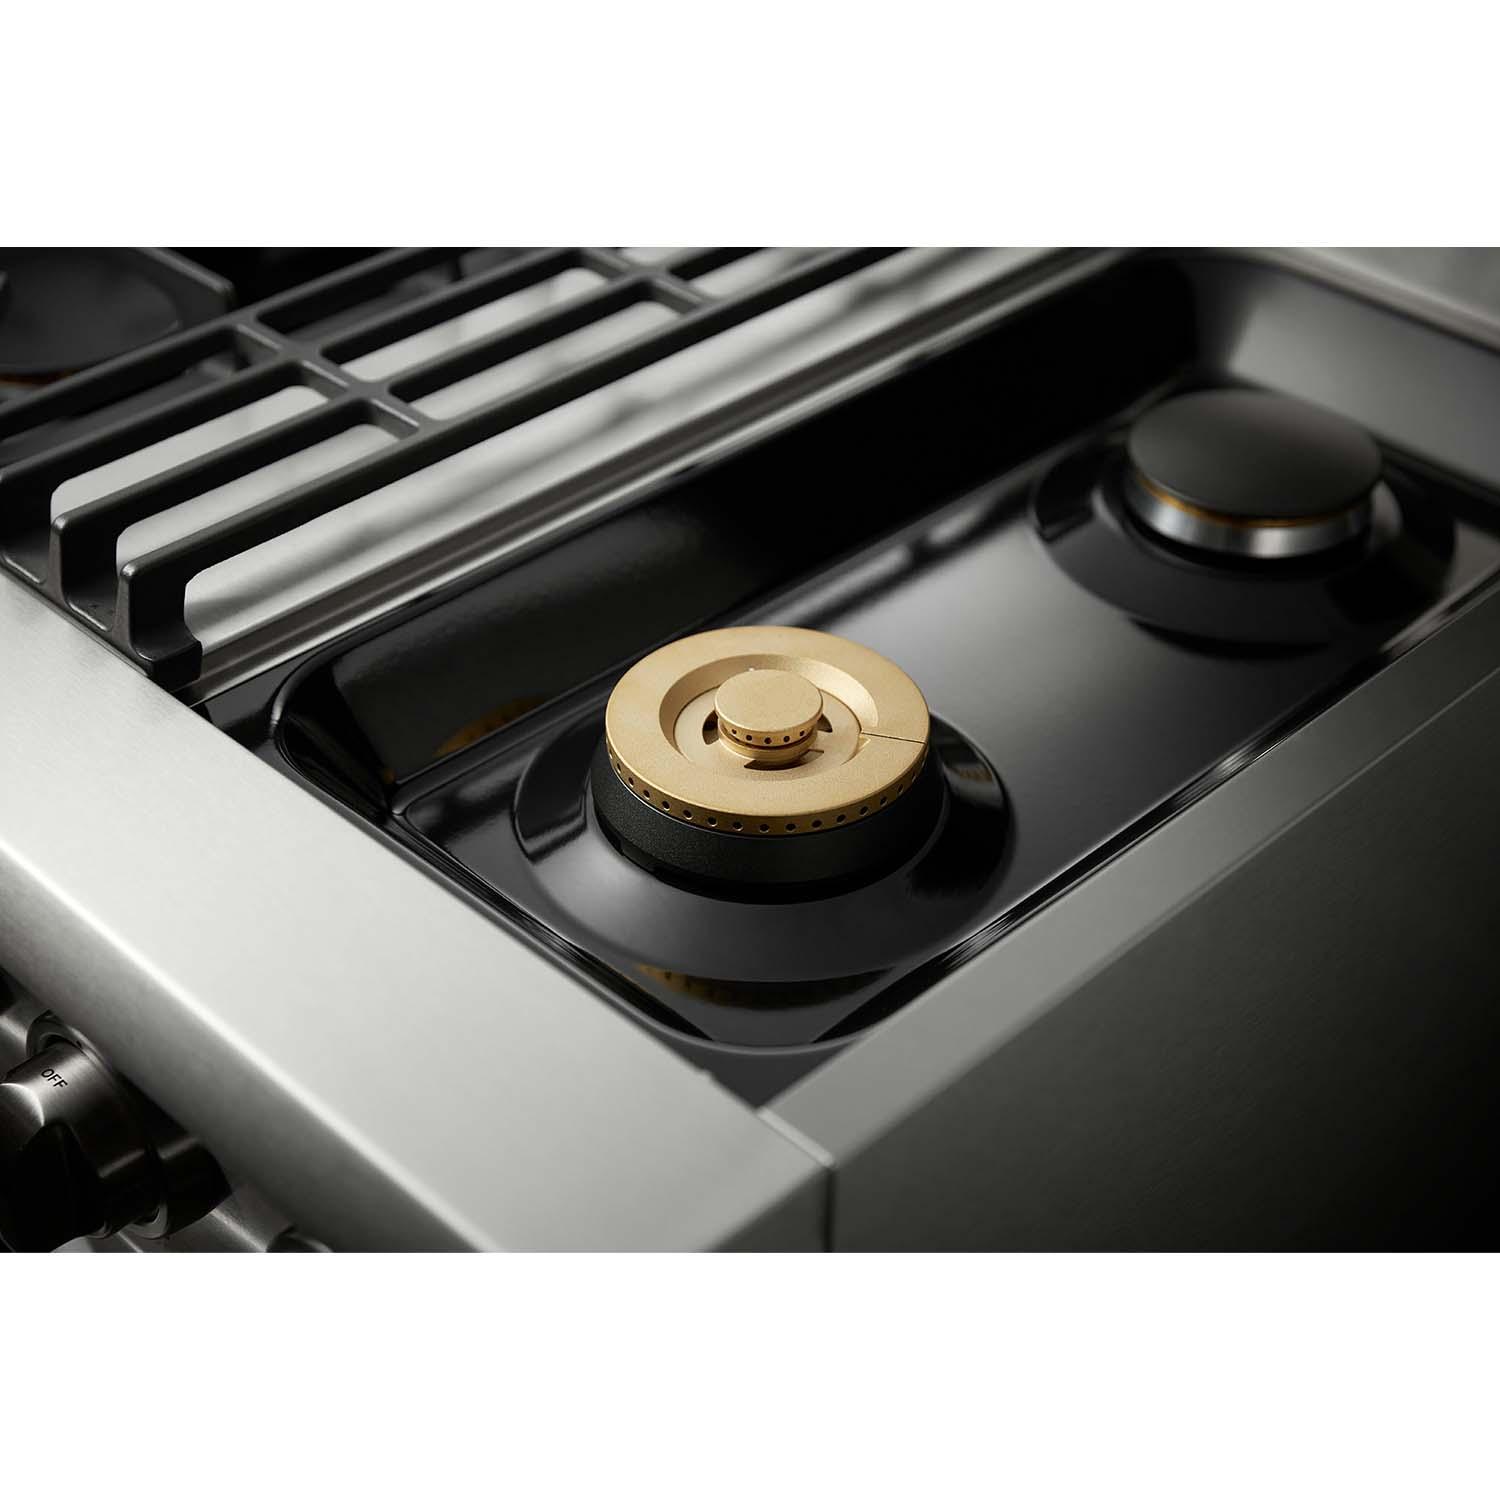 Thor Kitchen 30-inch Professional Dual Fuel Range - Hrd3088u/hrd3088ulp